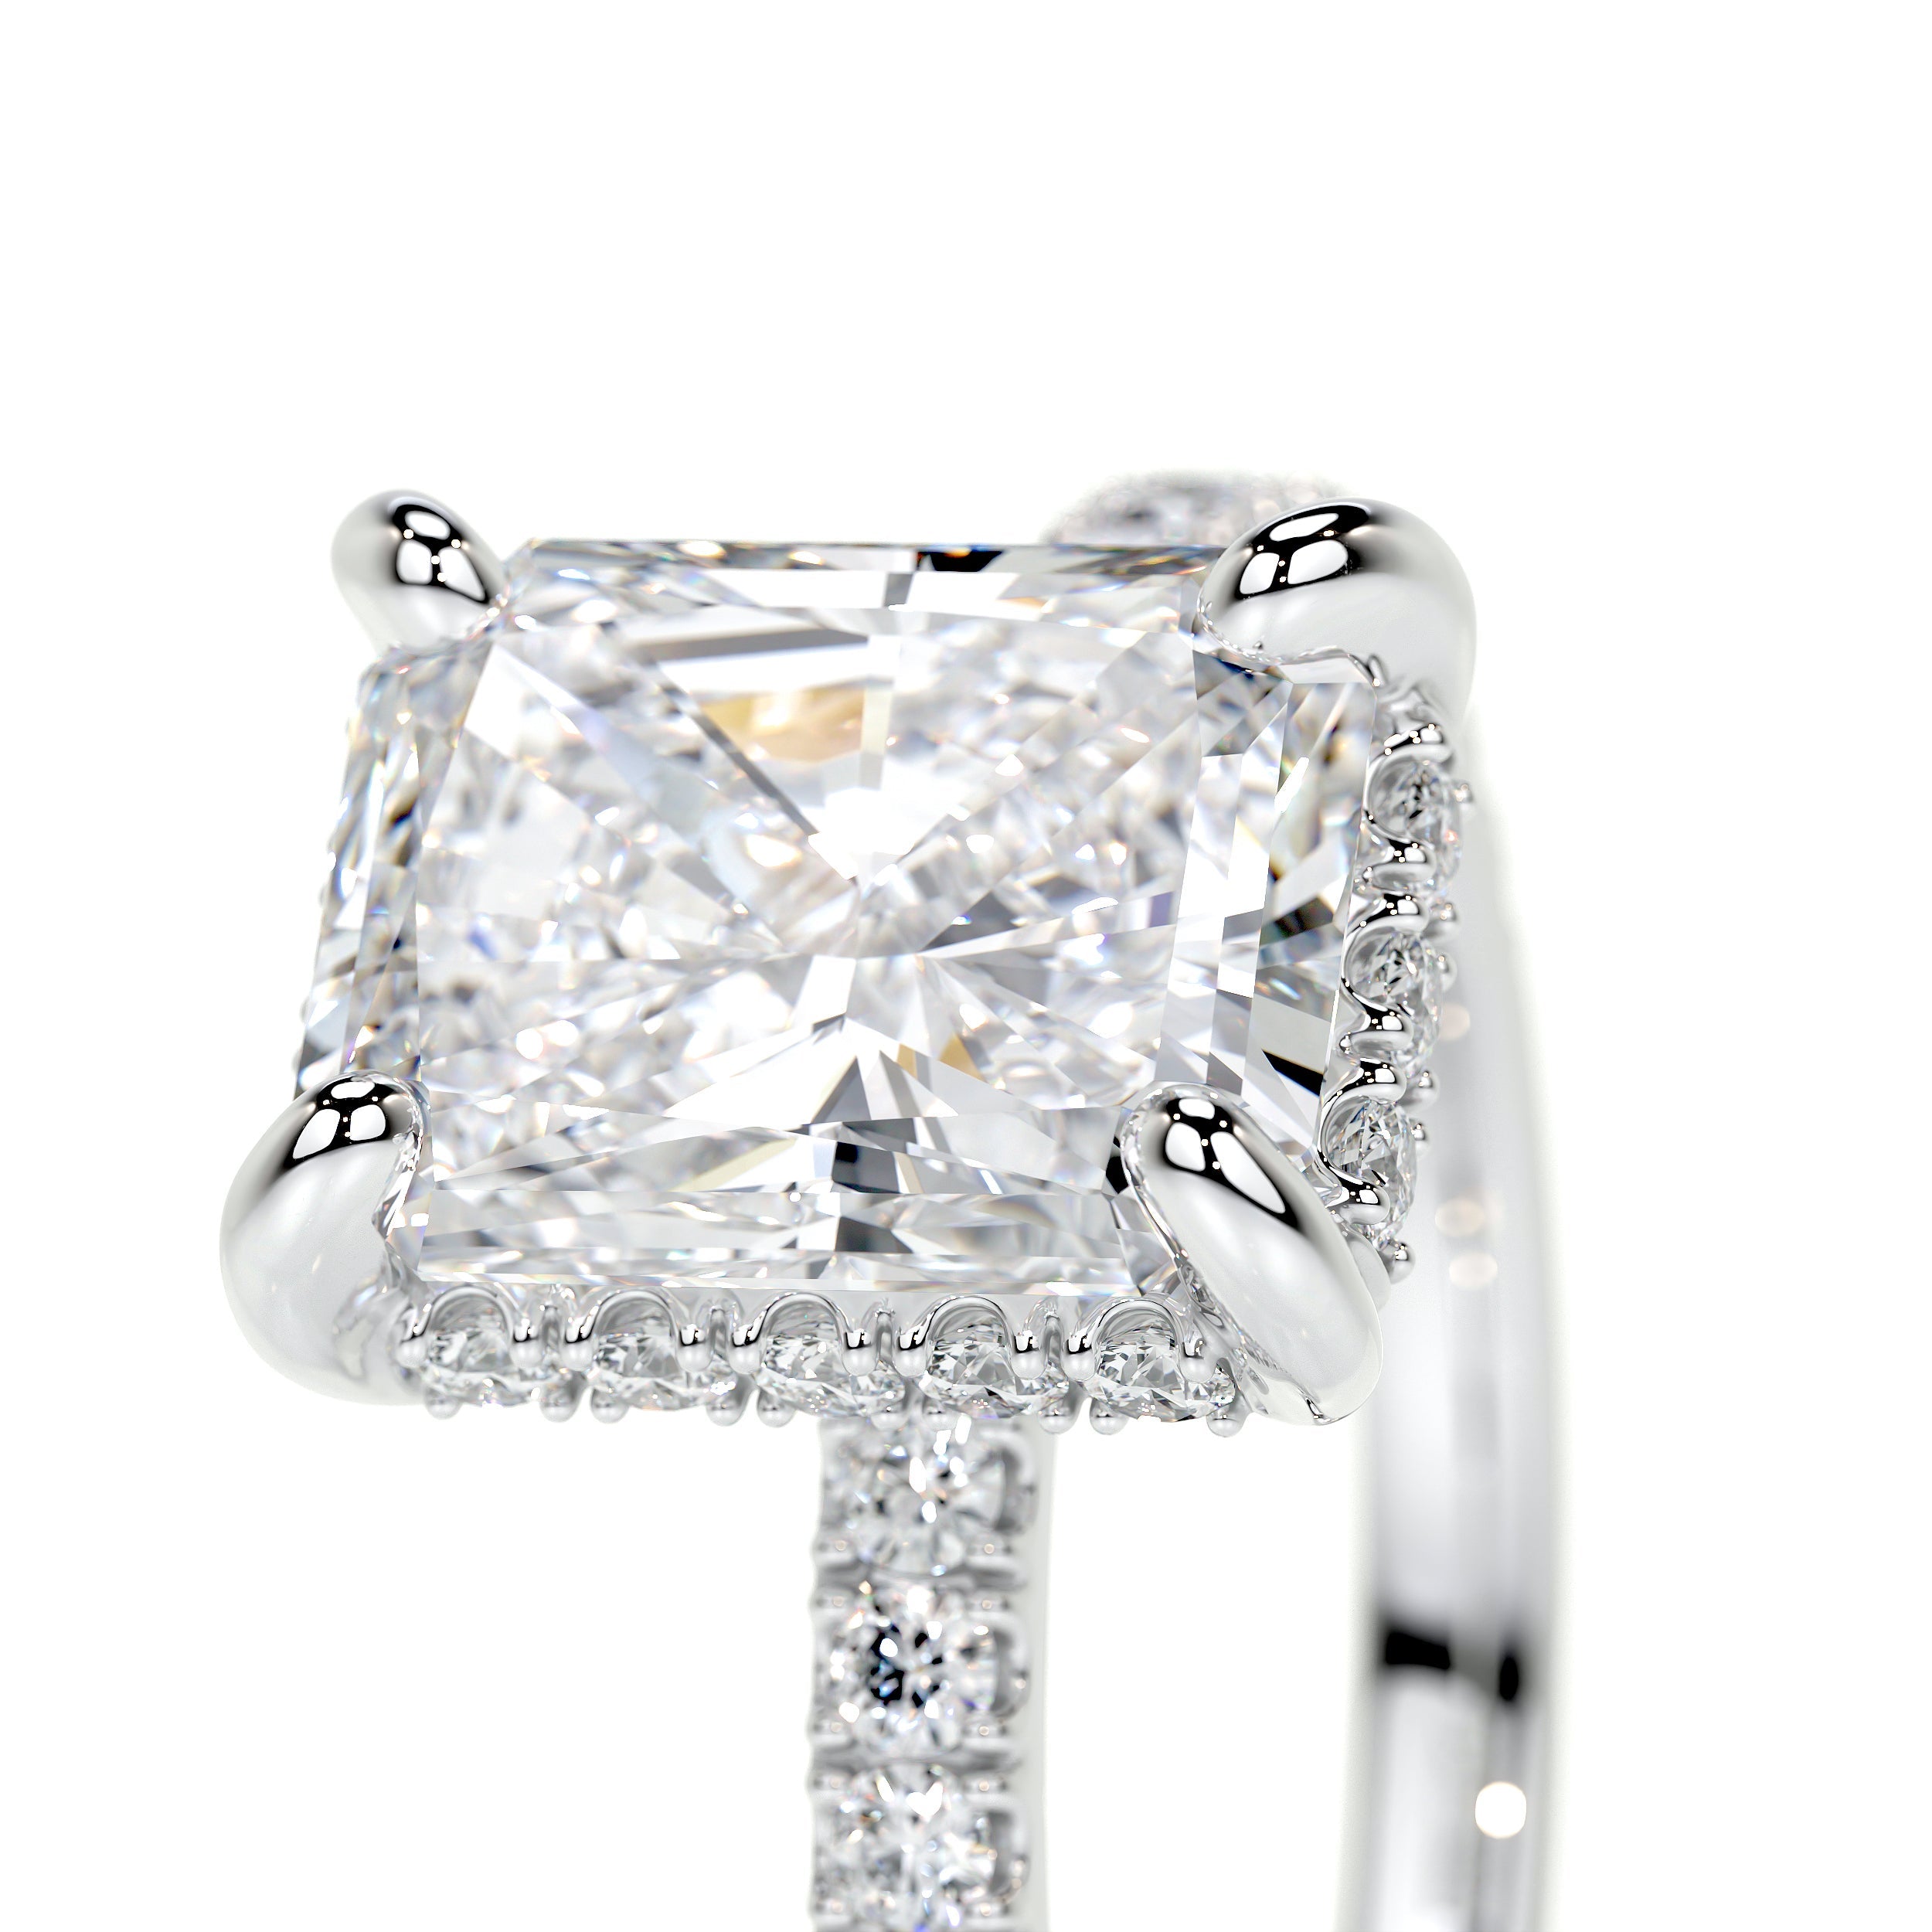 Luna Lab Grown Diamond Ring   (2 Carat) -18K White Gold